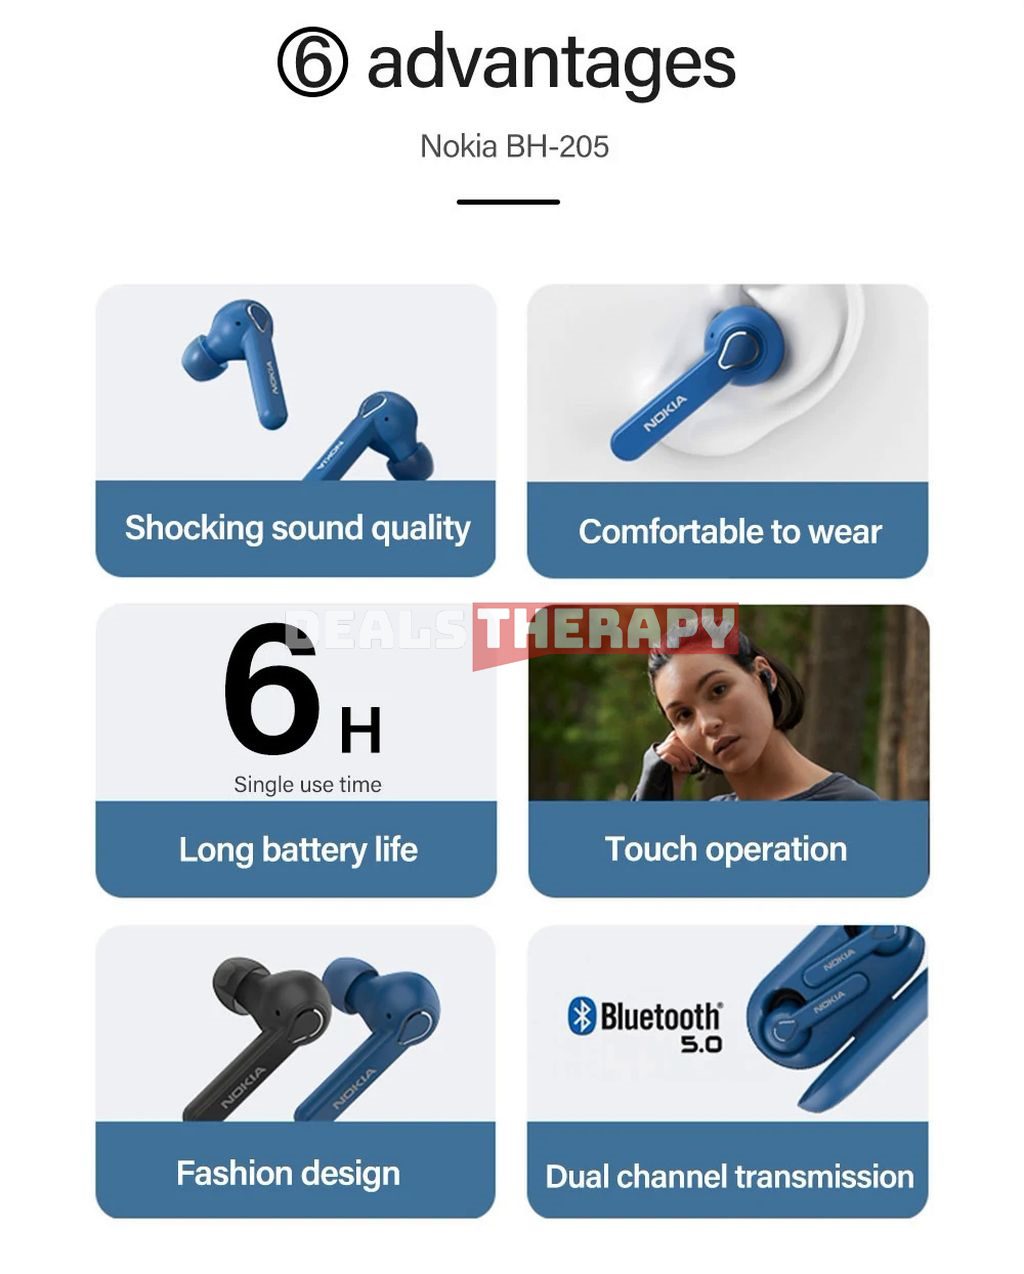 Nokia BH-205